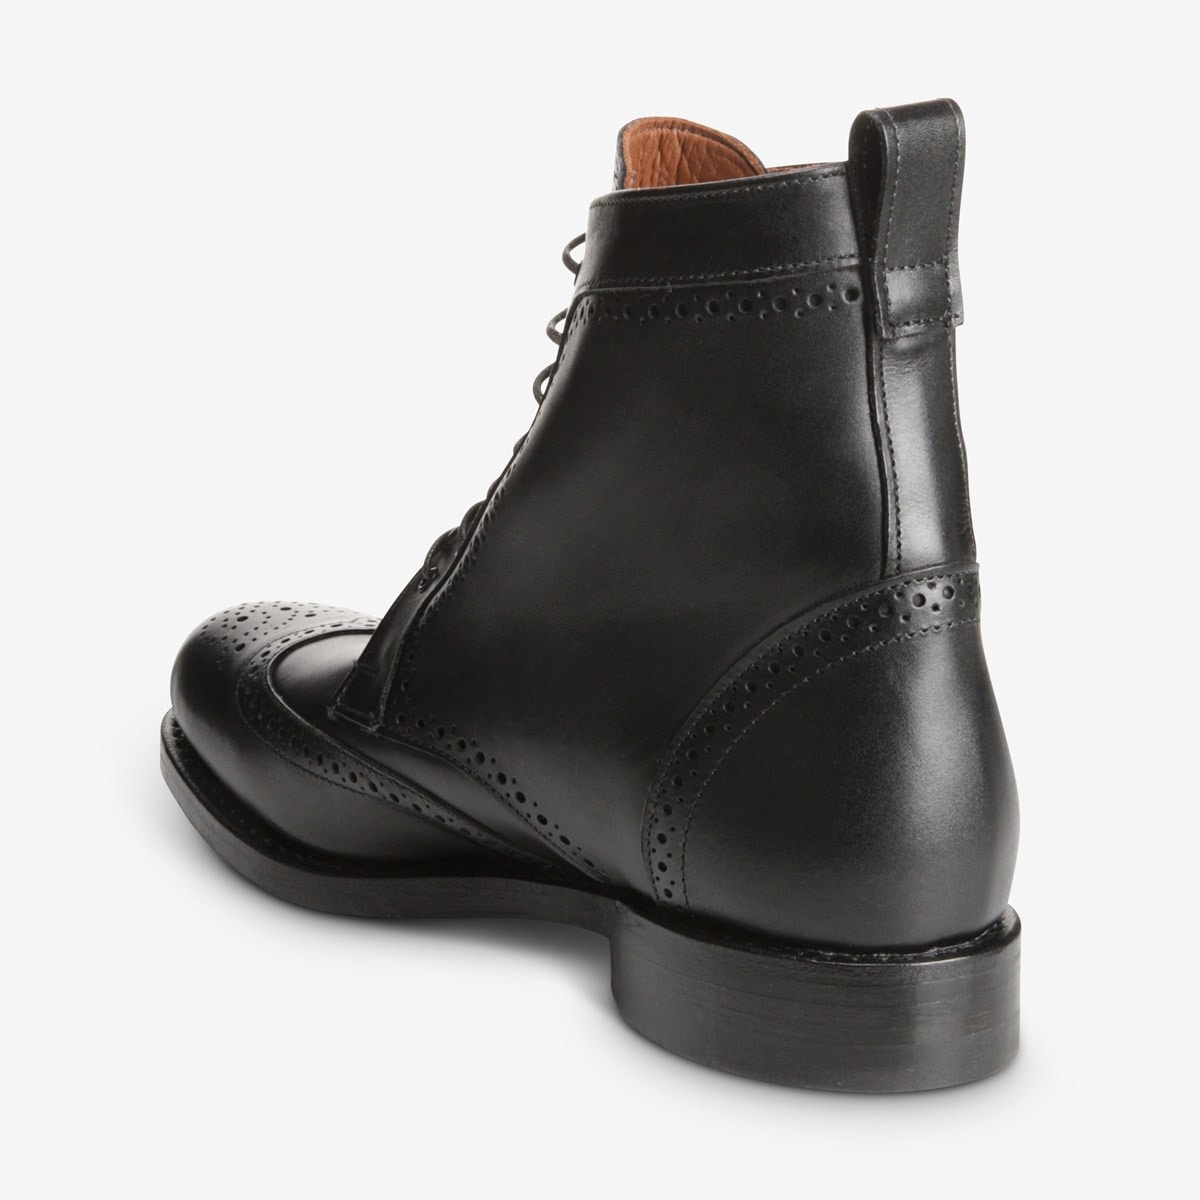 Dalton Wingtip Dress Boot with Dainite Rubber Sole | Men's Boots | Allen  Edmonds